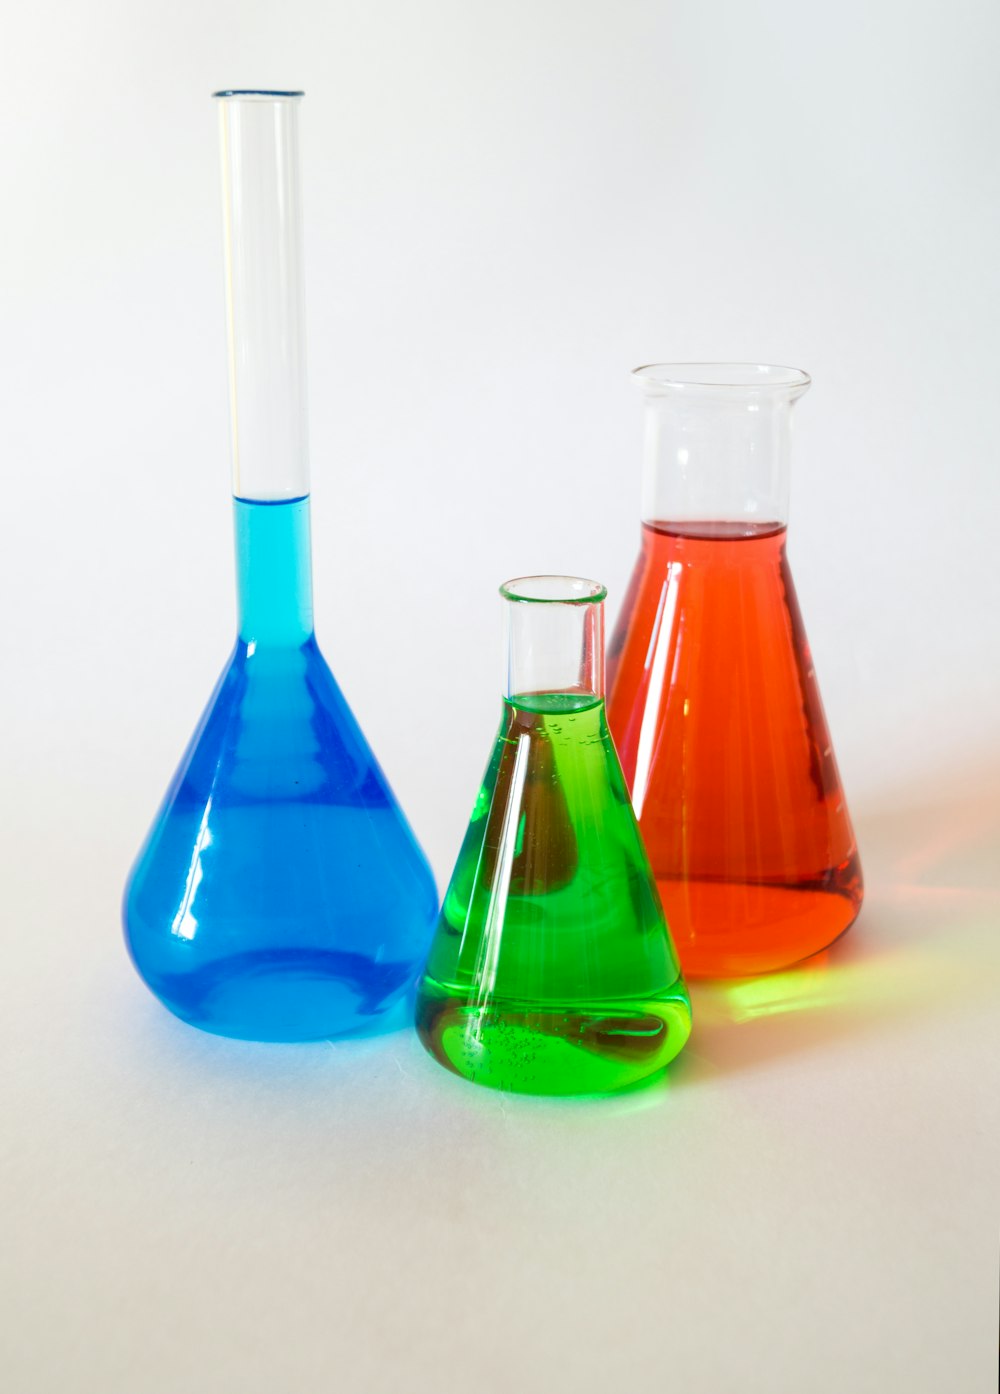 Tres aparatos de laboratorio llenos de líquido de colores variados